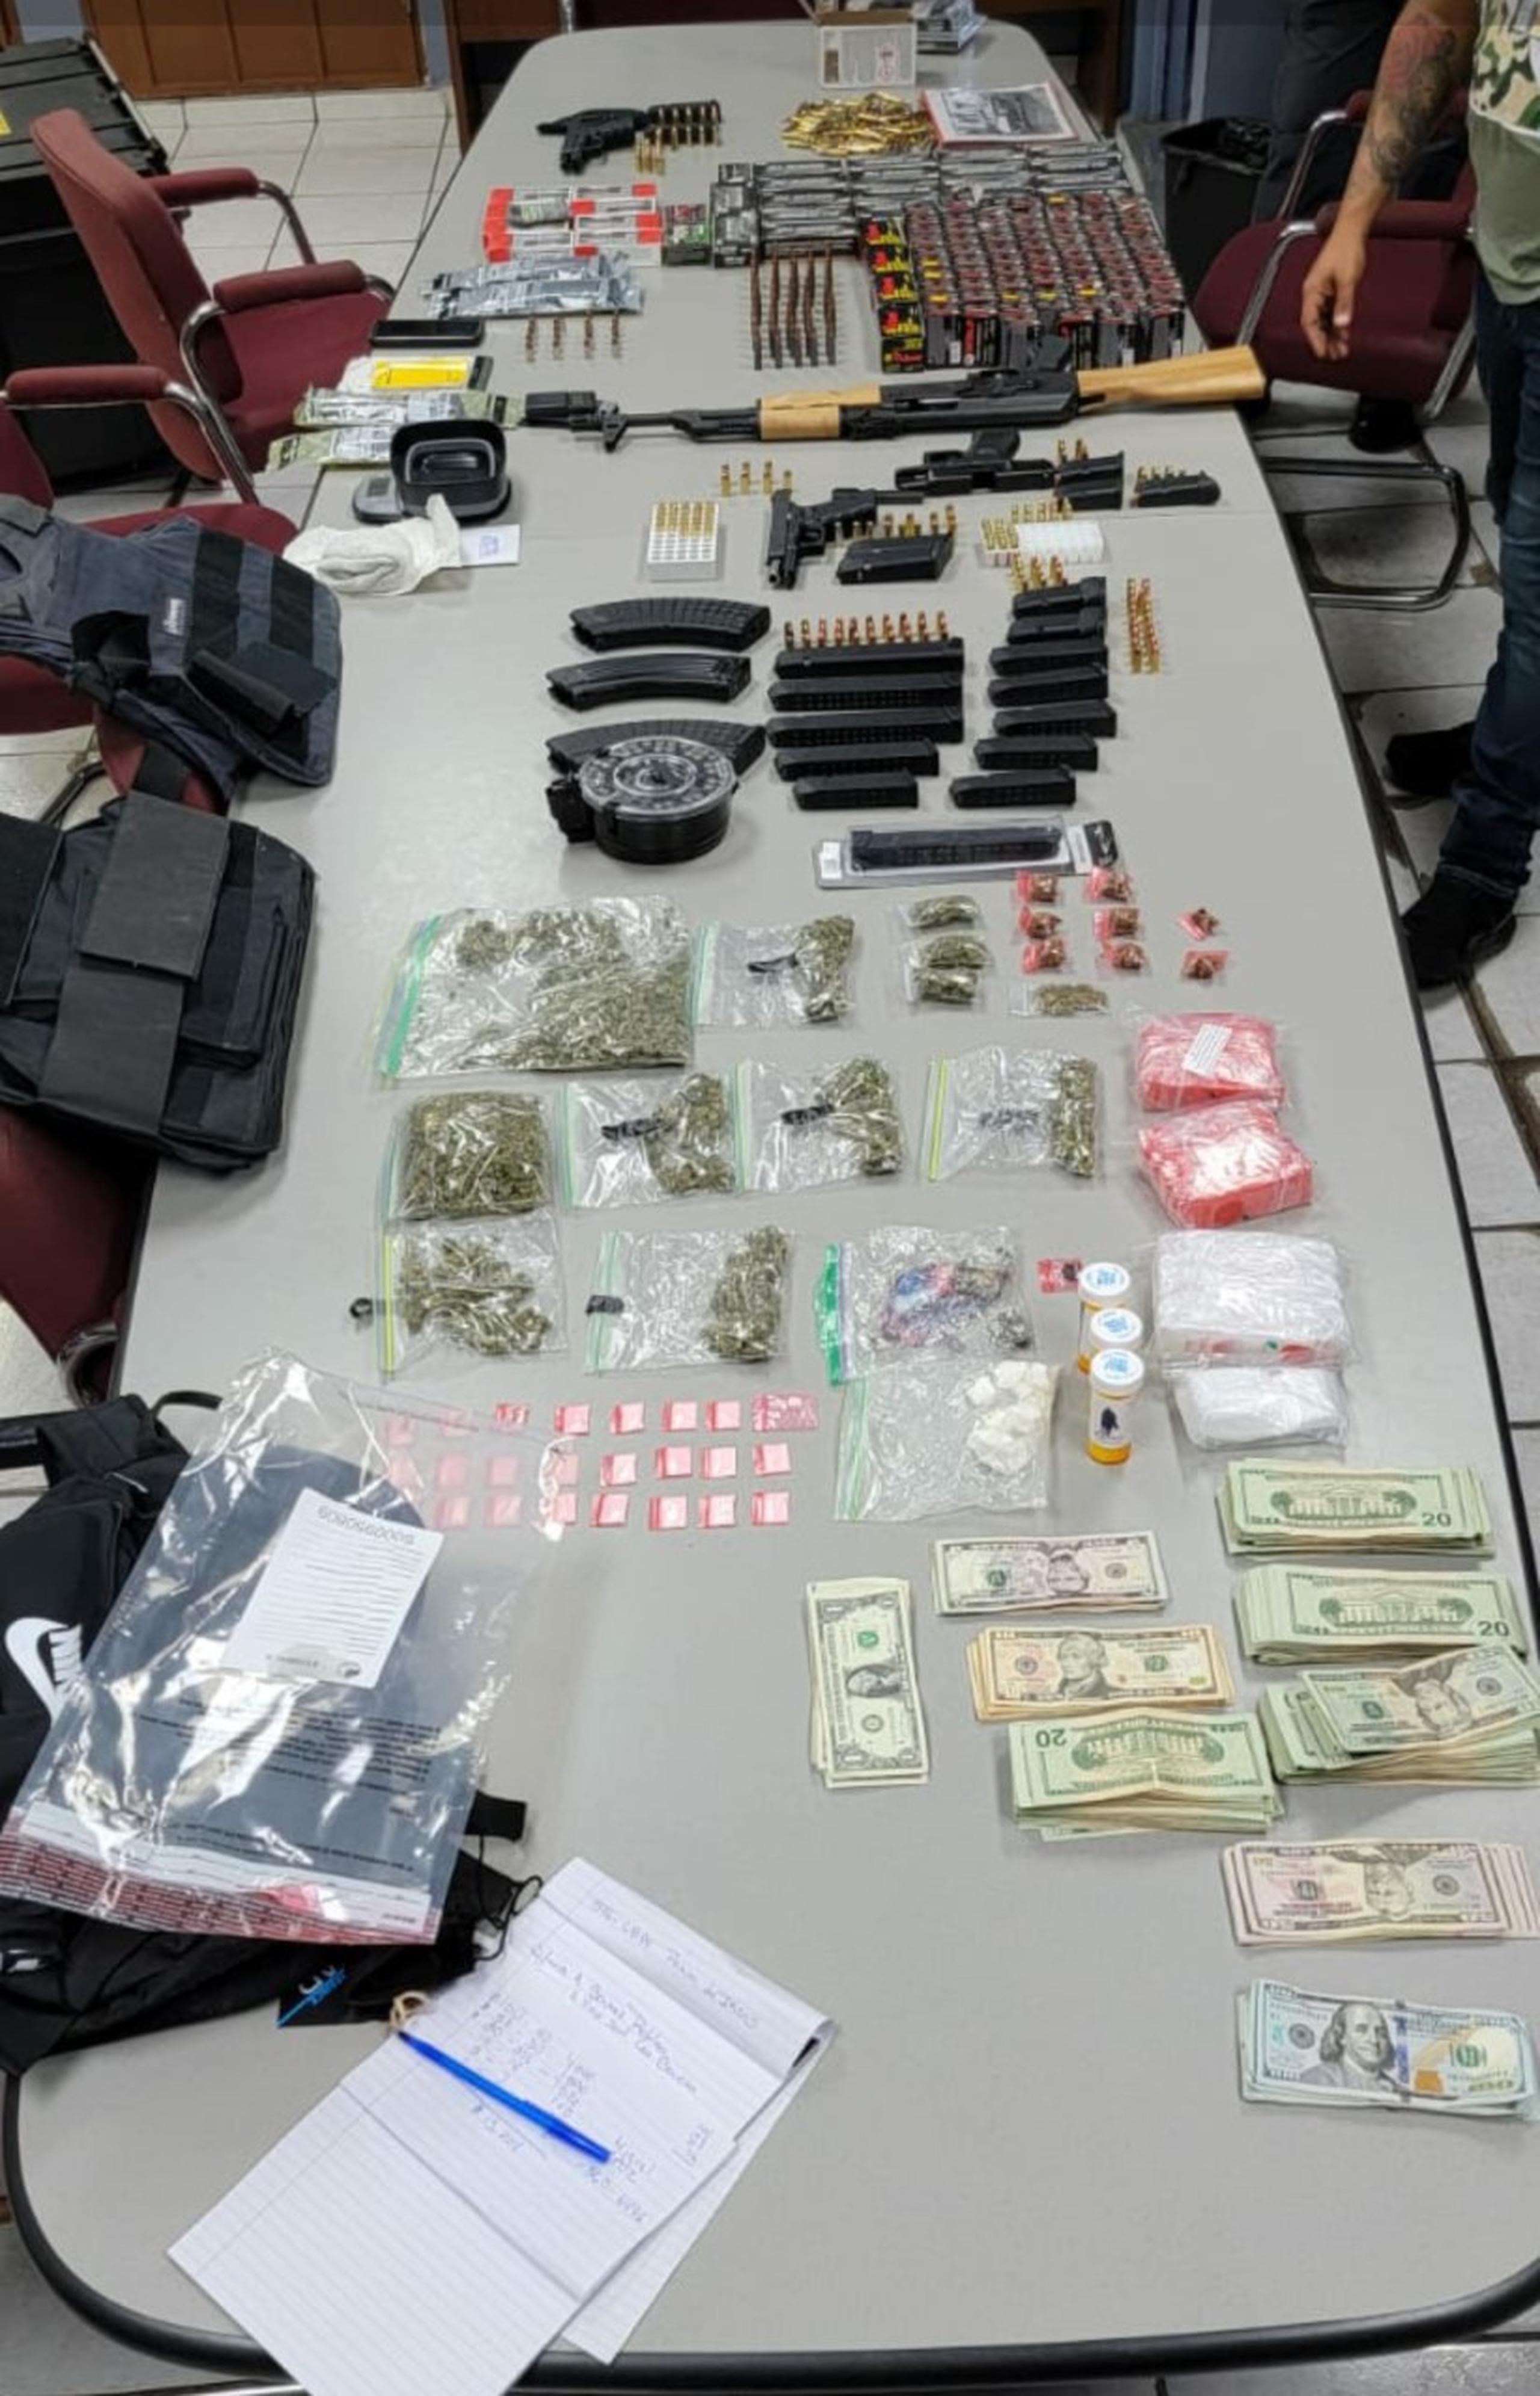 Personal del Plan Integral de Seguridad de Arecibo ocupó armas ilegales, cientos de balas, cargadores y sustancias controladas durante un allanamiento.